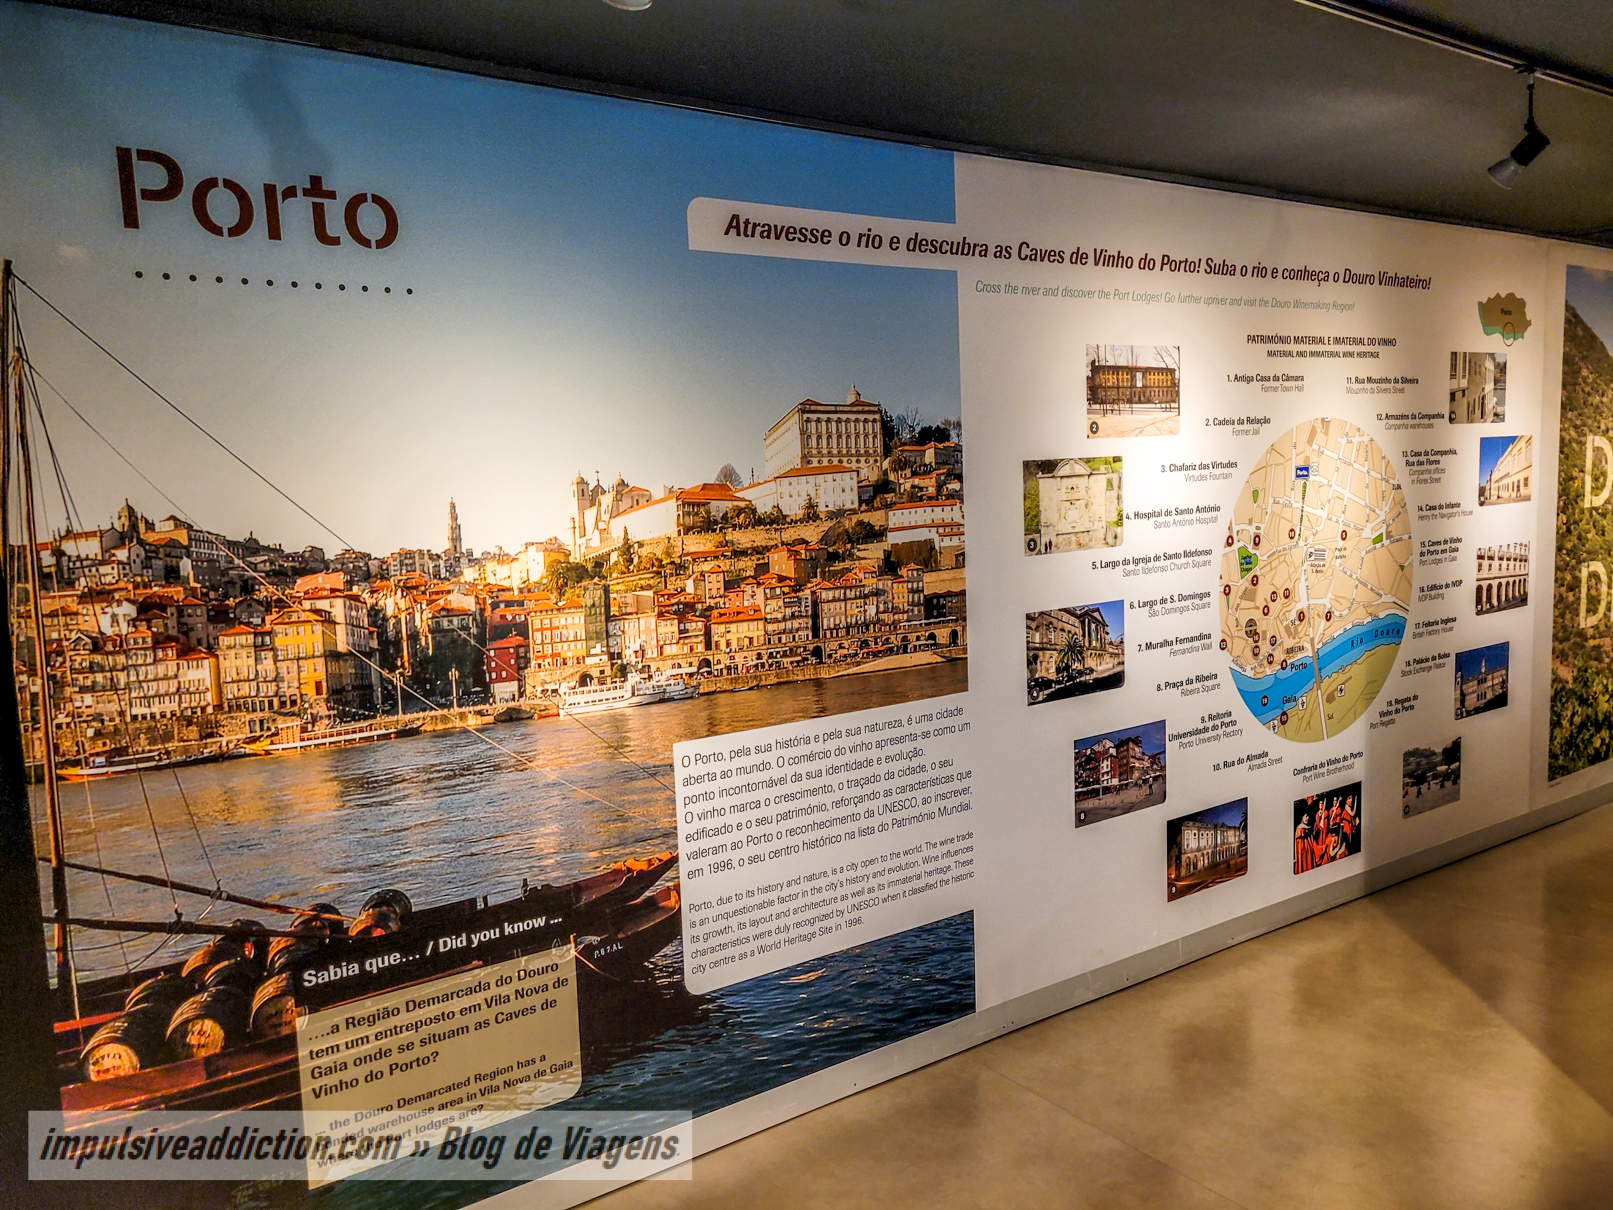 Douro and Port Wine Institute Museum